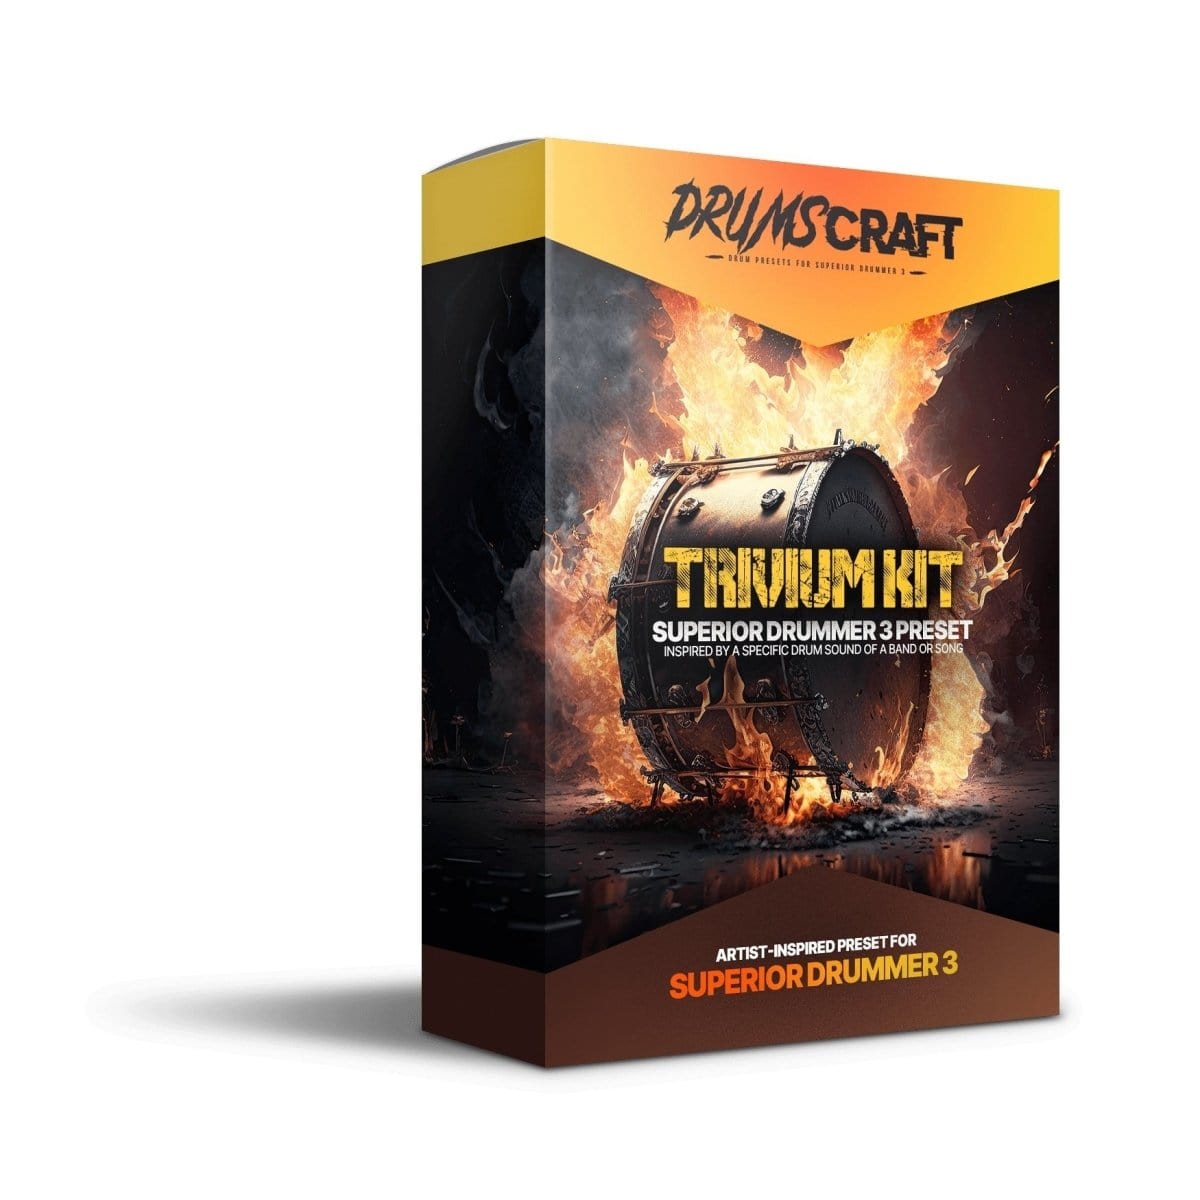 Trivium Kit - Superior Drummer 3 Presets by Develop Device